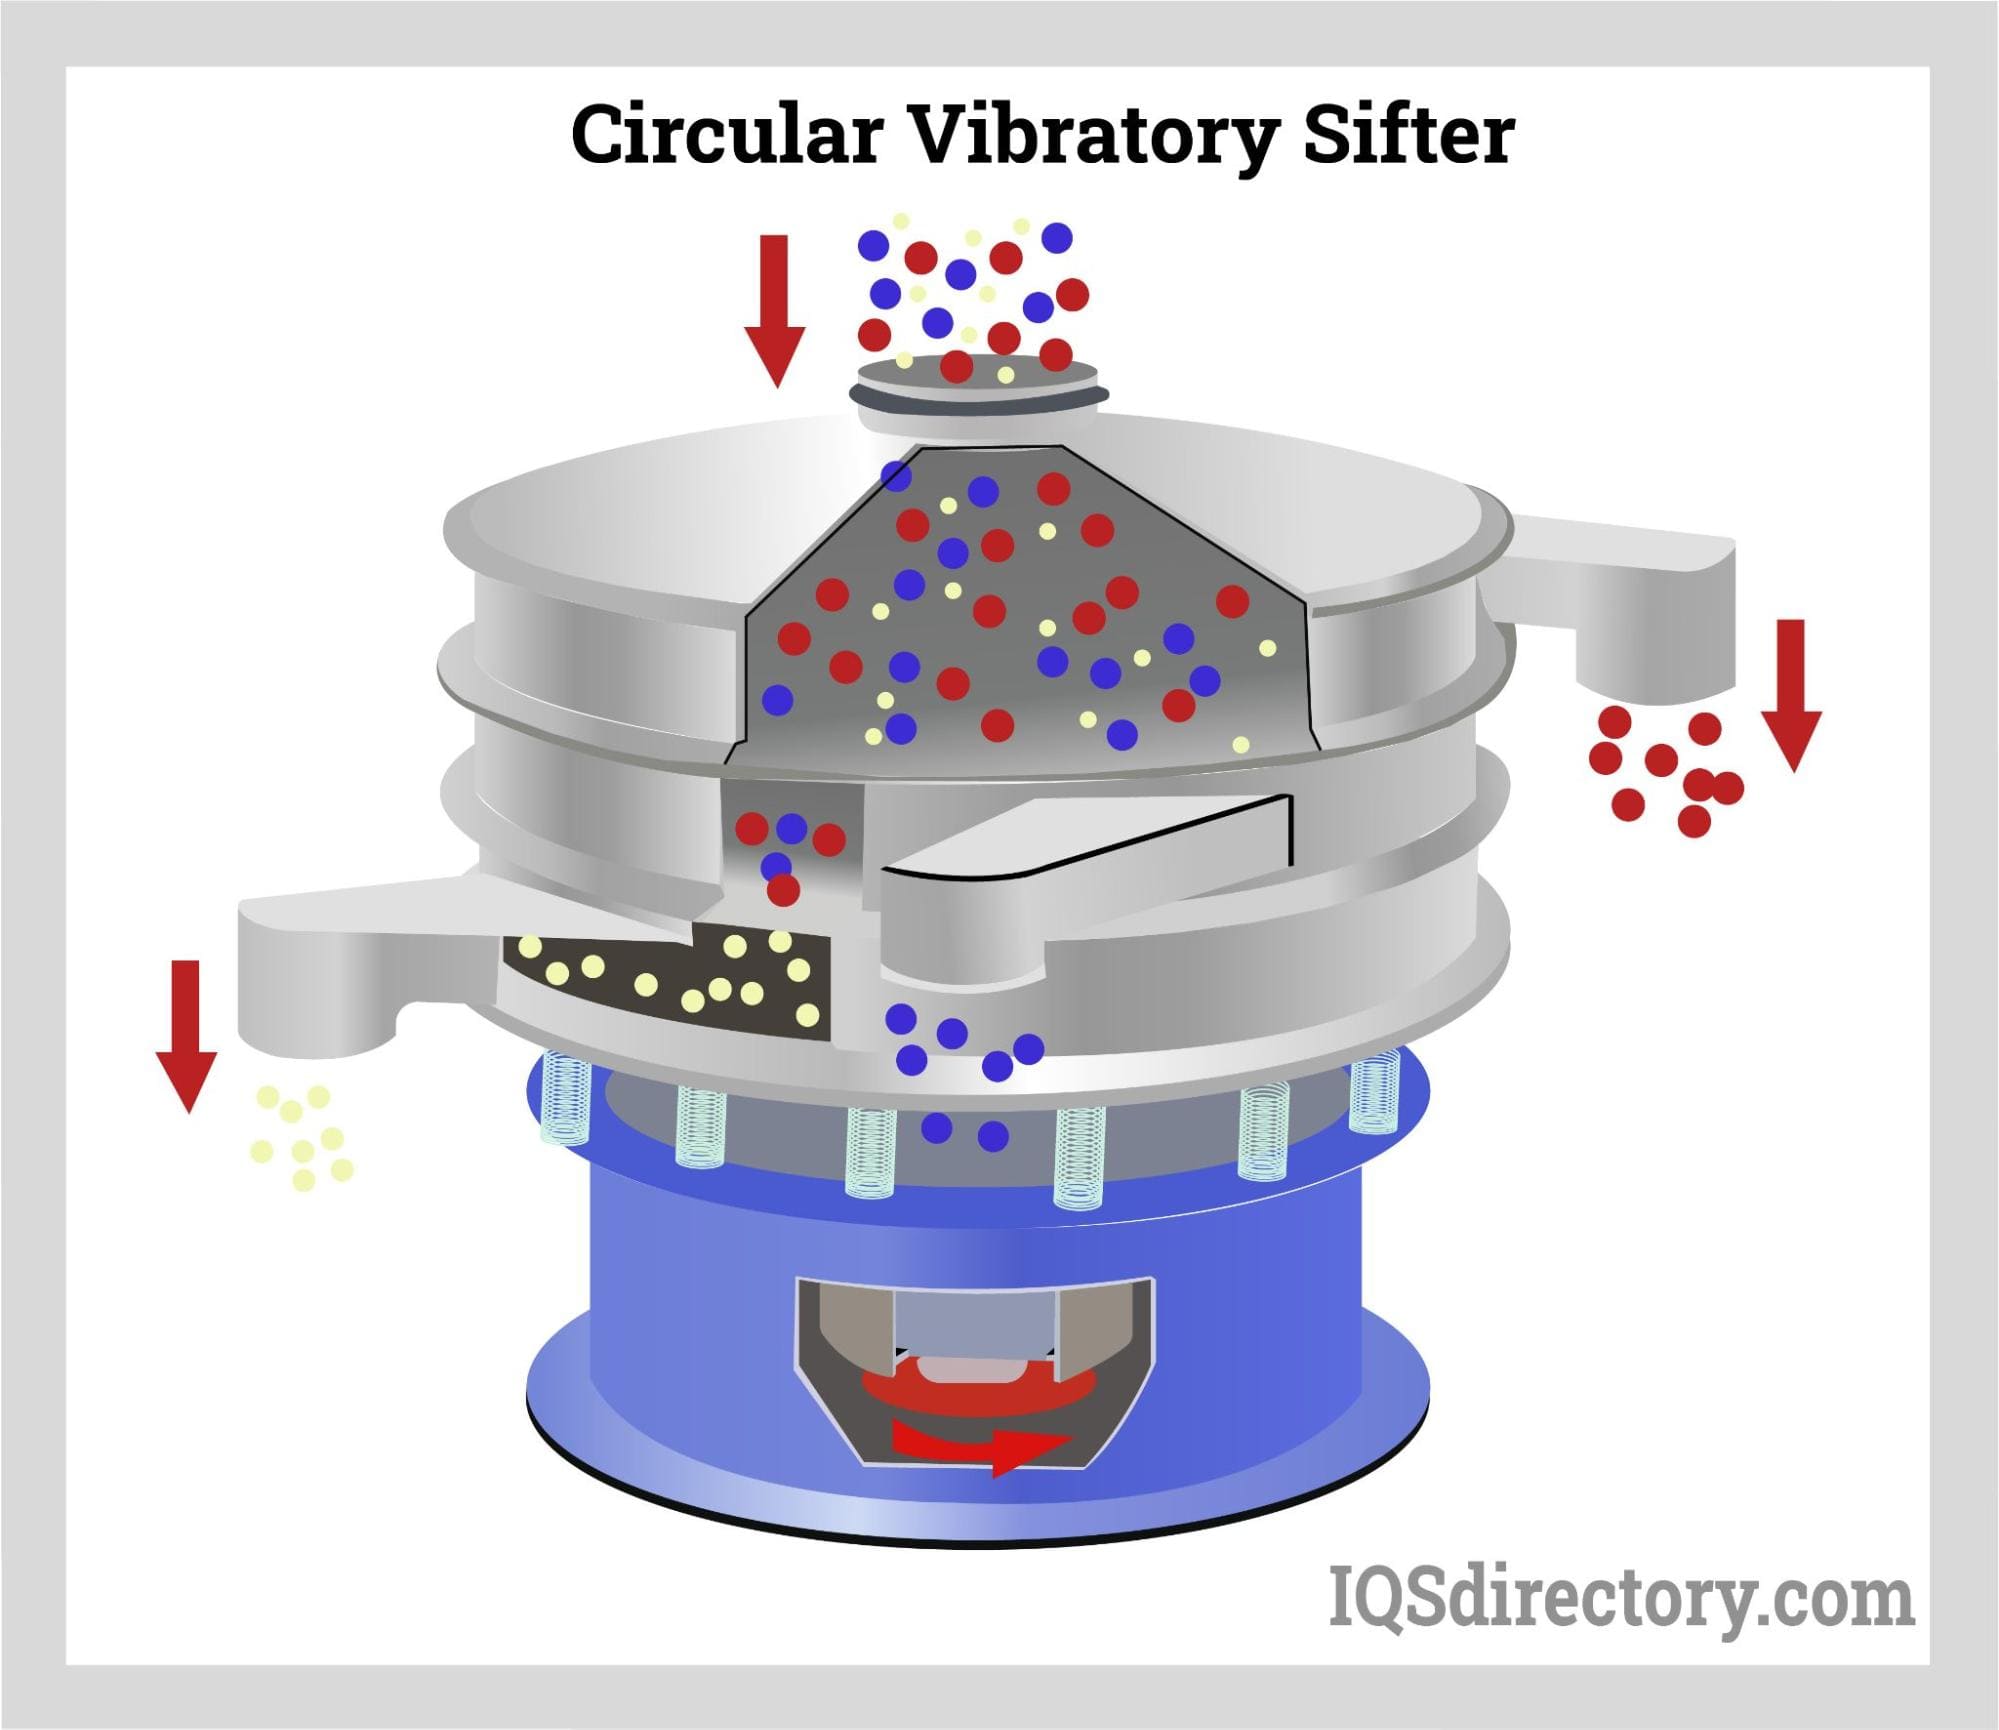 Circular Vibratory Sifter